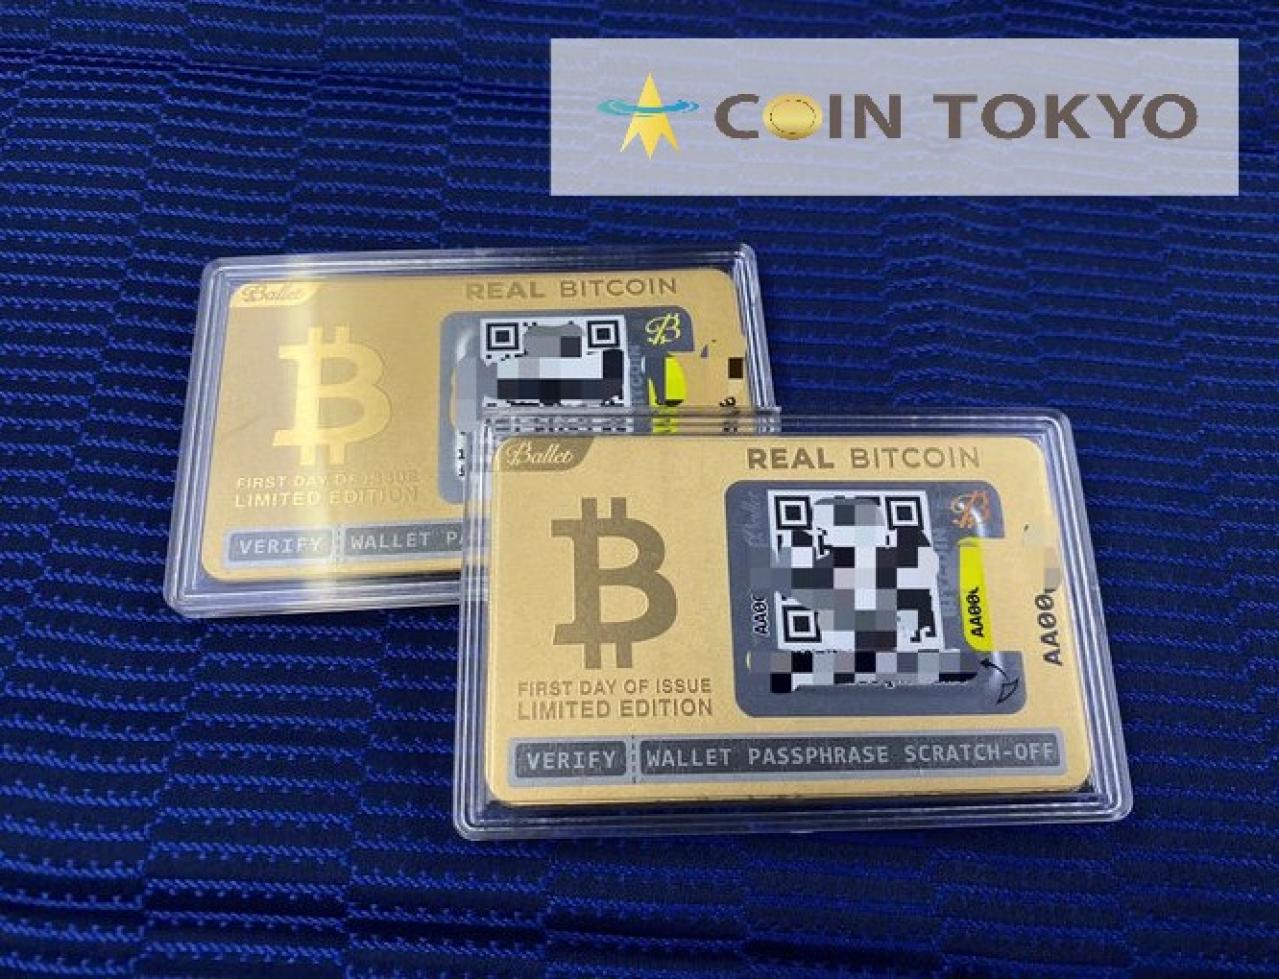 比特币赠予加密货币企业家Bobby Lee和Bruce Willis的女儿+加密货币新闻网站Coin Tokyo